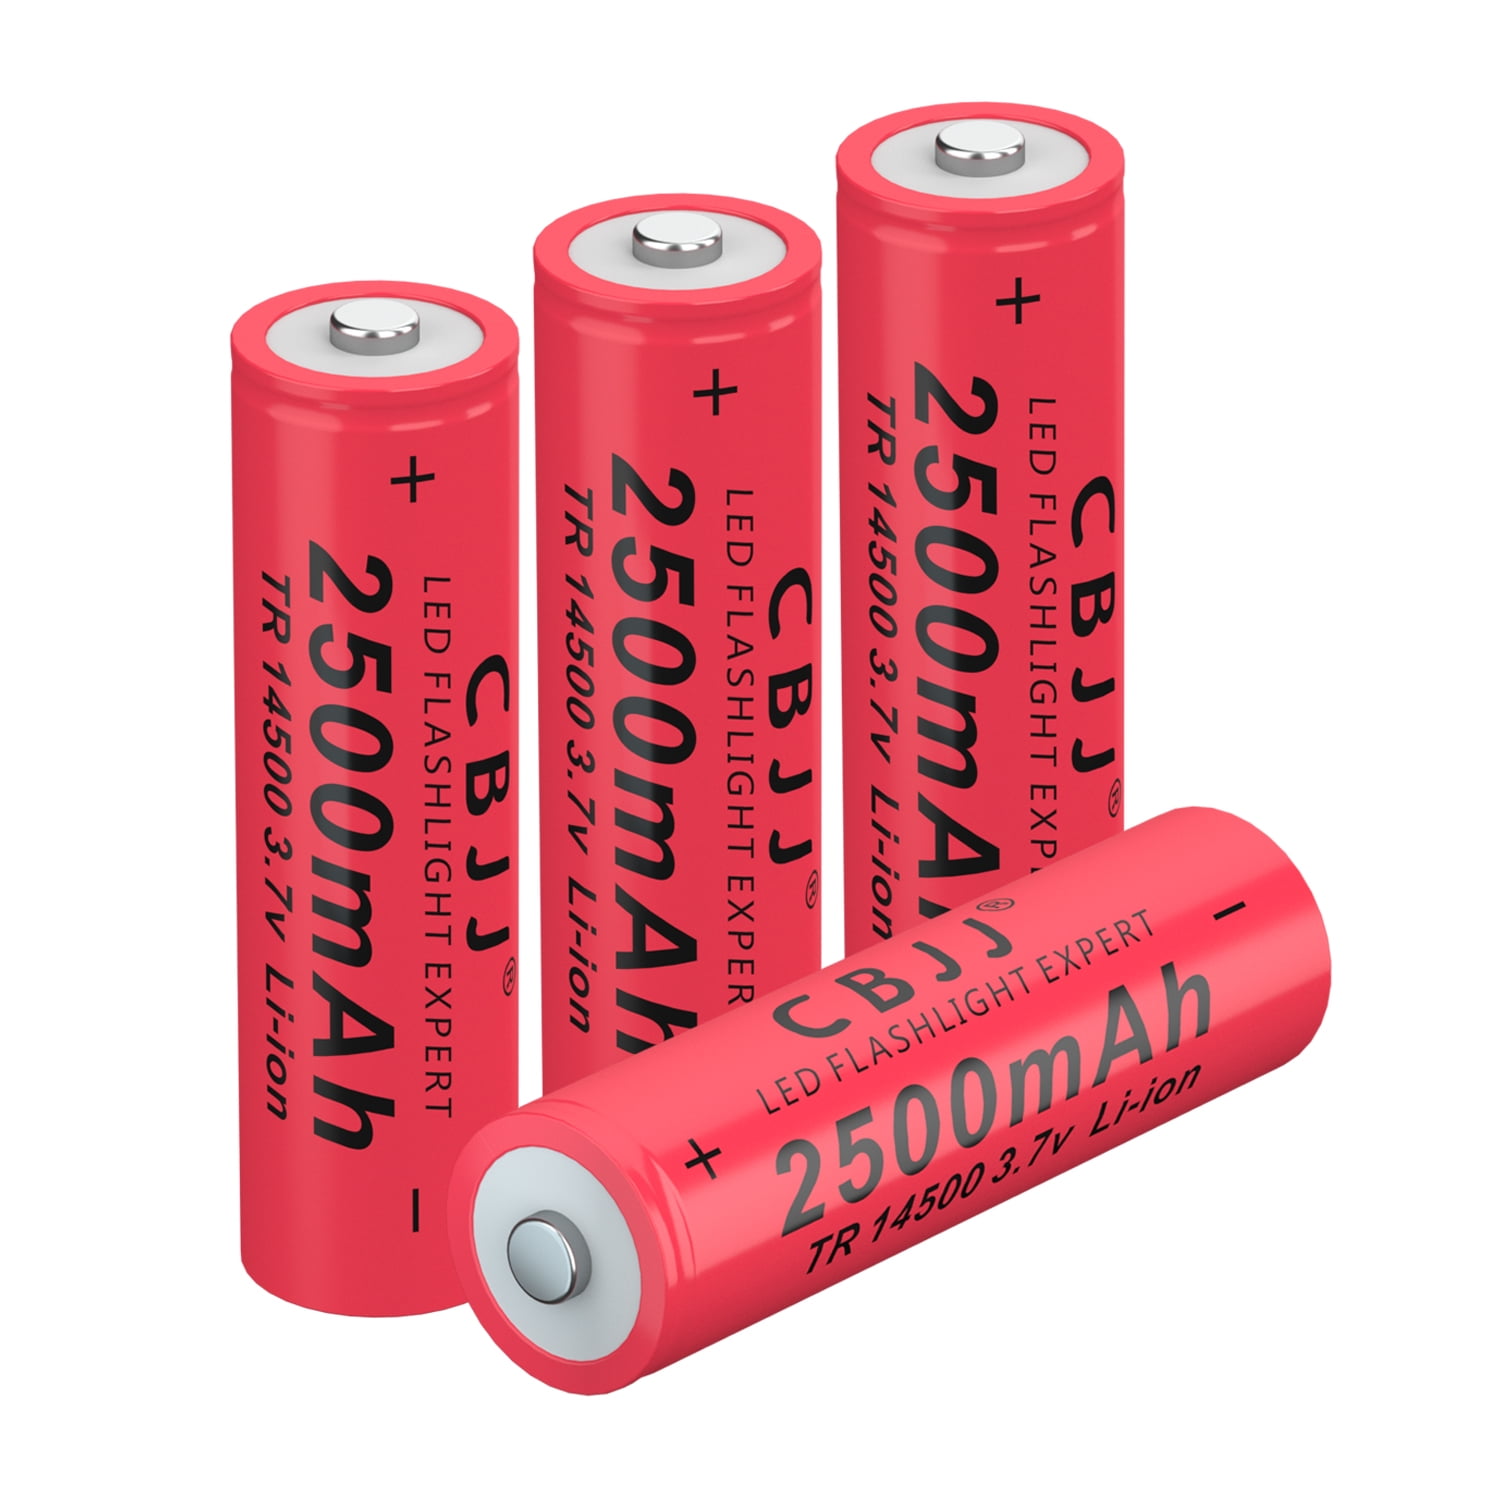 Liitokala 3 7V 2600mAh VTC5A Rechargeable Li Ion Battery 18650 Akku  US18650VTC5A 35A Toys Flashlight279W From Ai805, $17.12